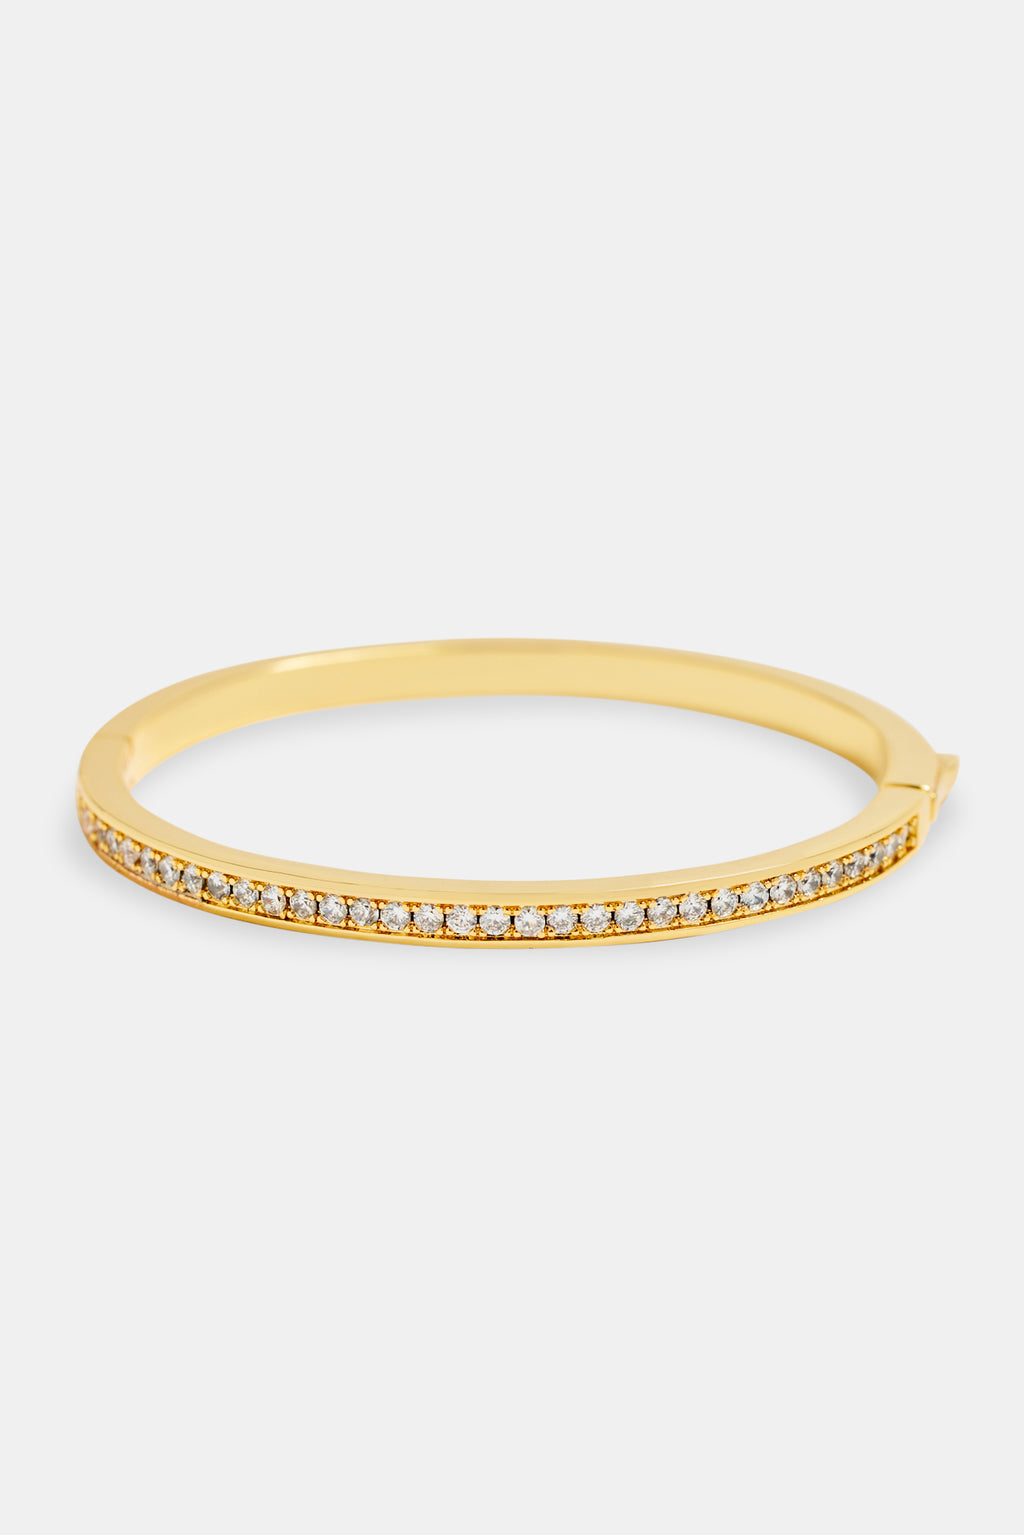 Gold Plated 4mm Iced CZ Polished Bangle | Womens Bracelets | Shop ...